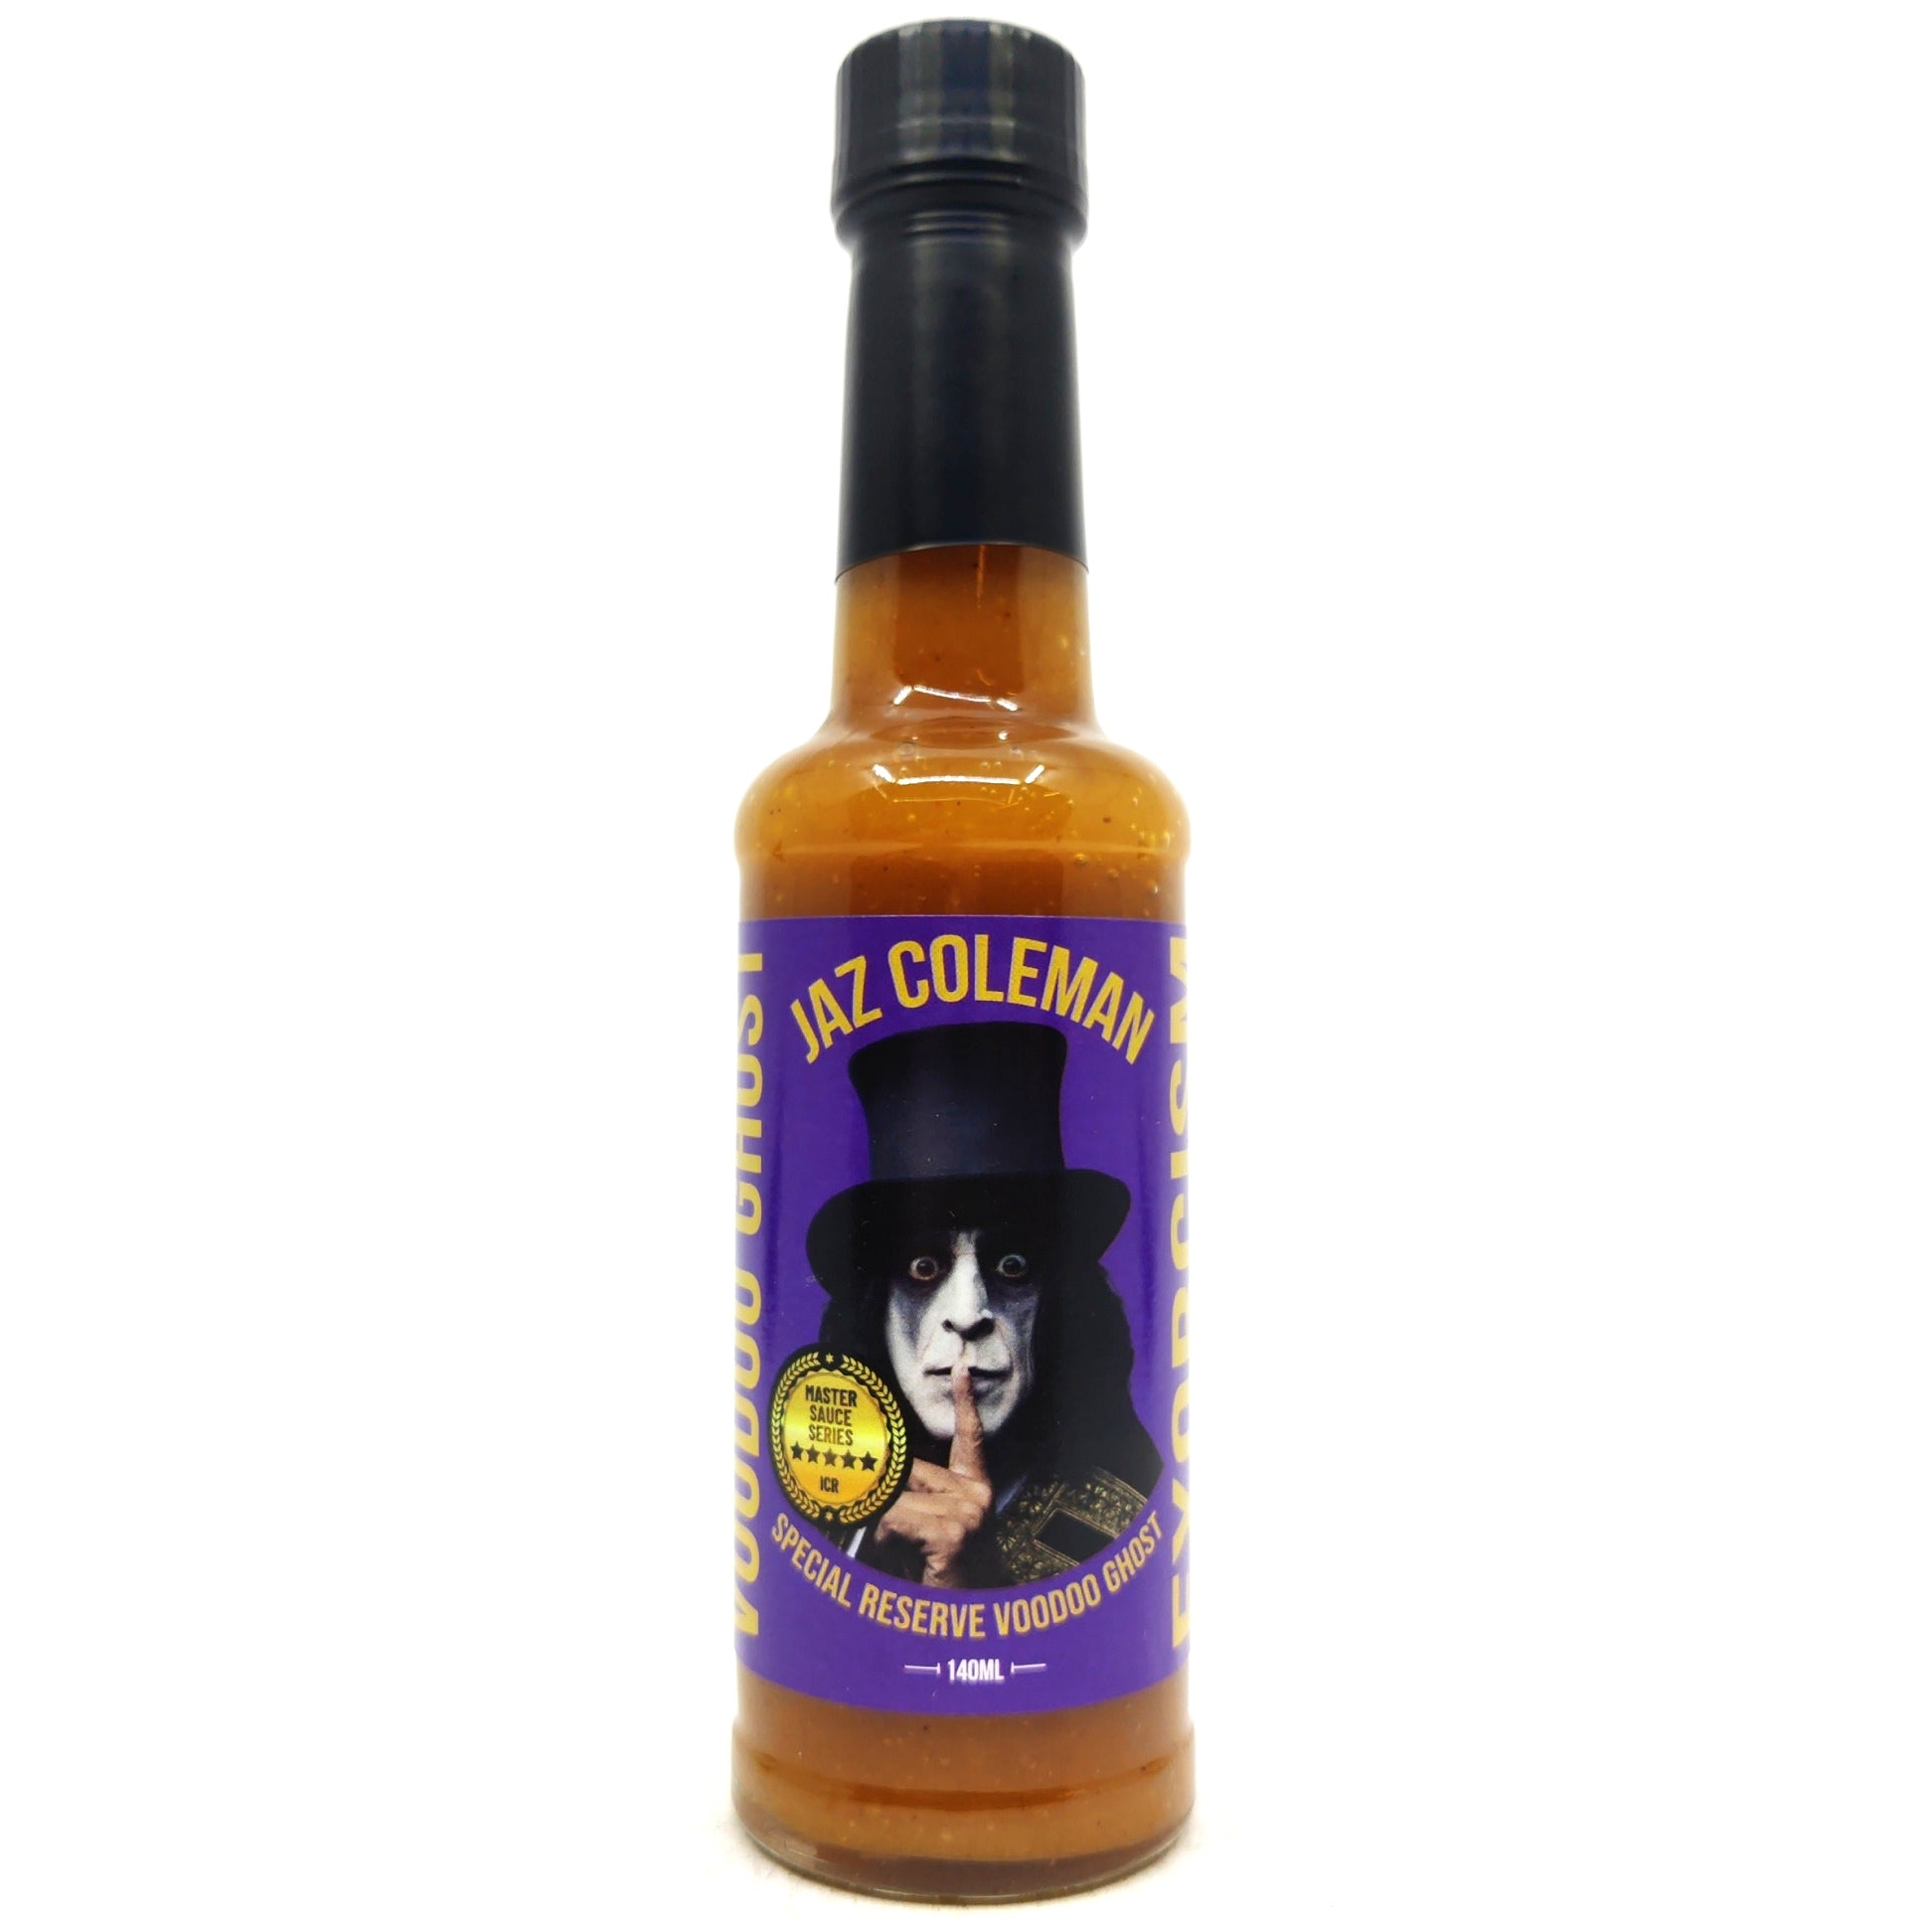 Jaz Coleman Special Reserve Voodoo Ghost Hot Sauce (140ml)-Hop Burns & Black